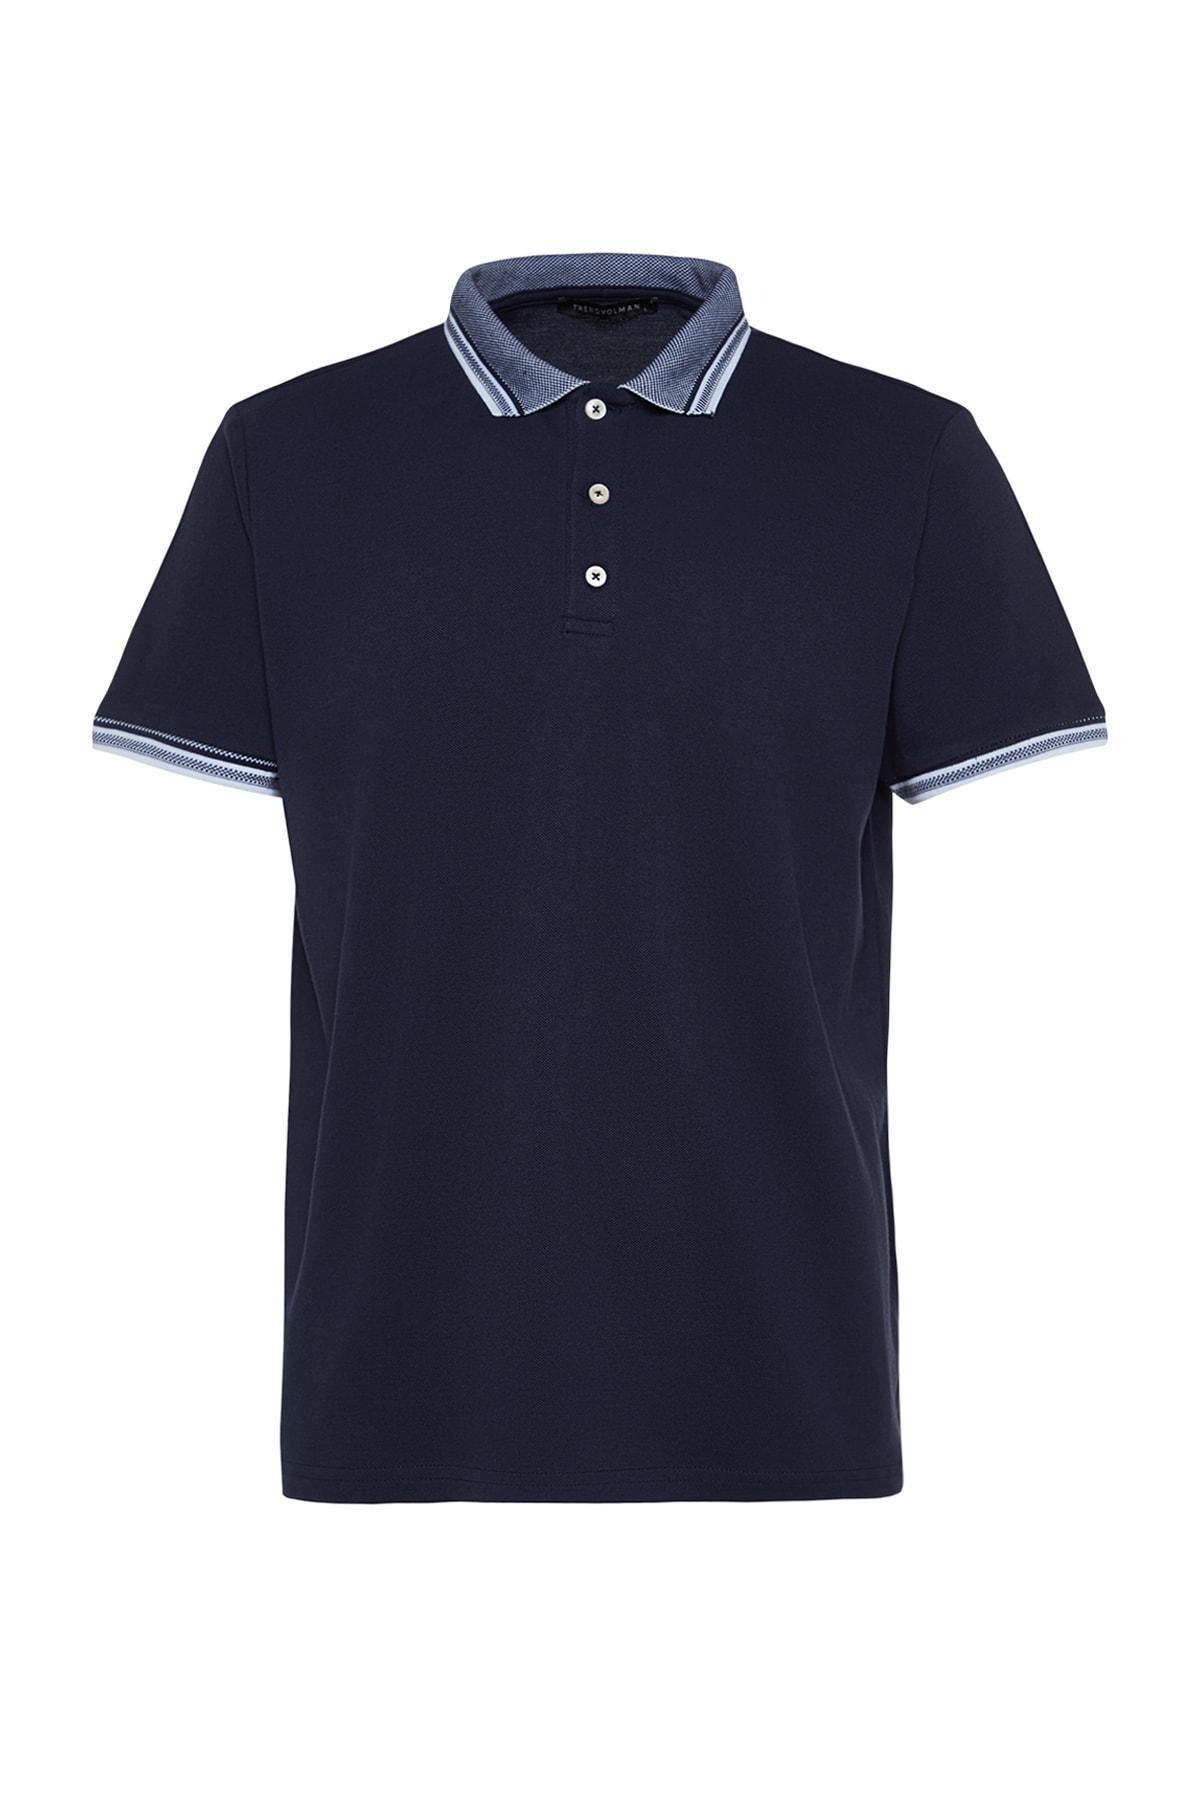 Trendyol - Navy Polo T-Shirt